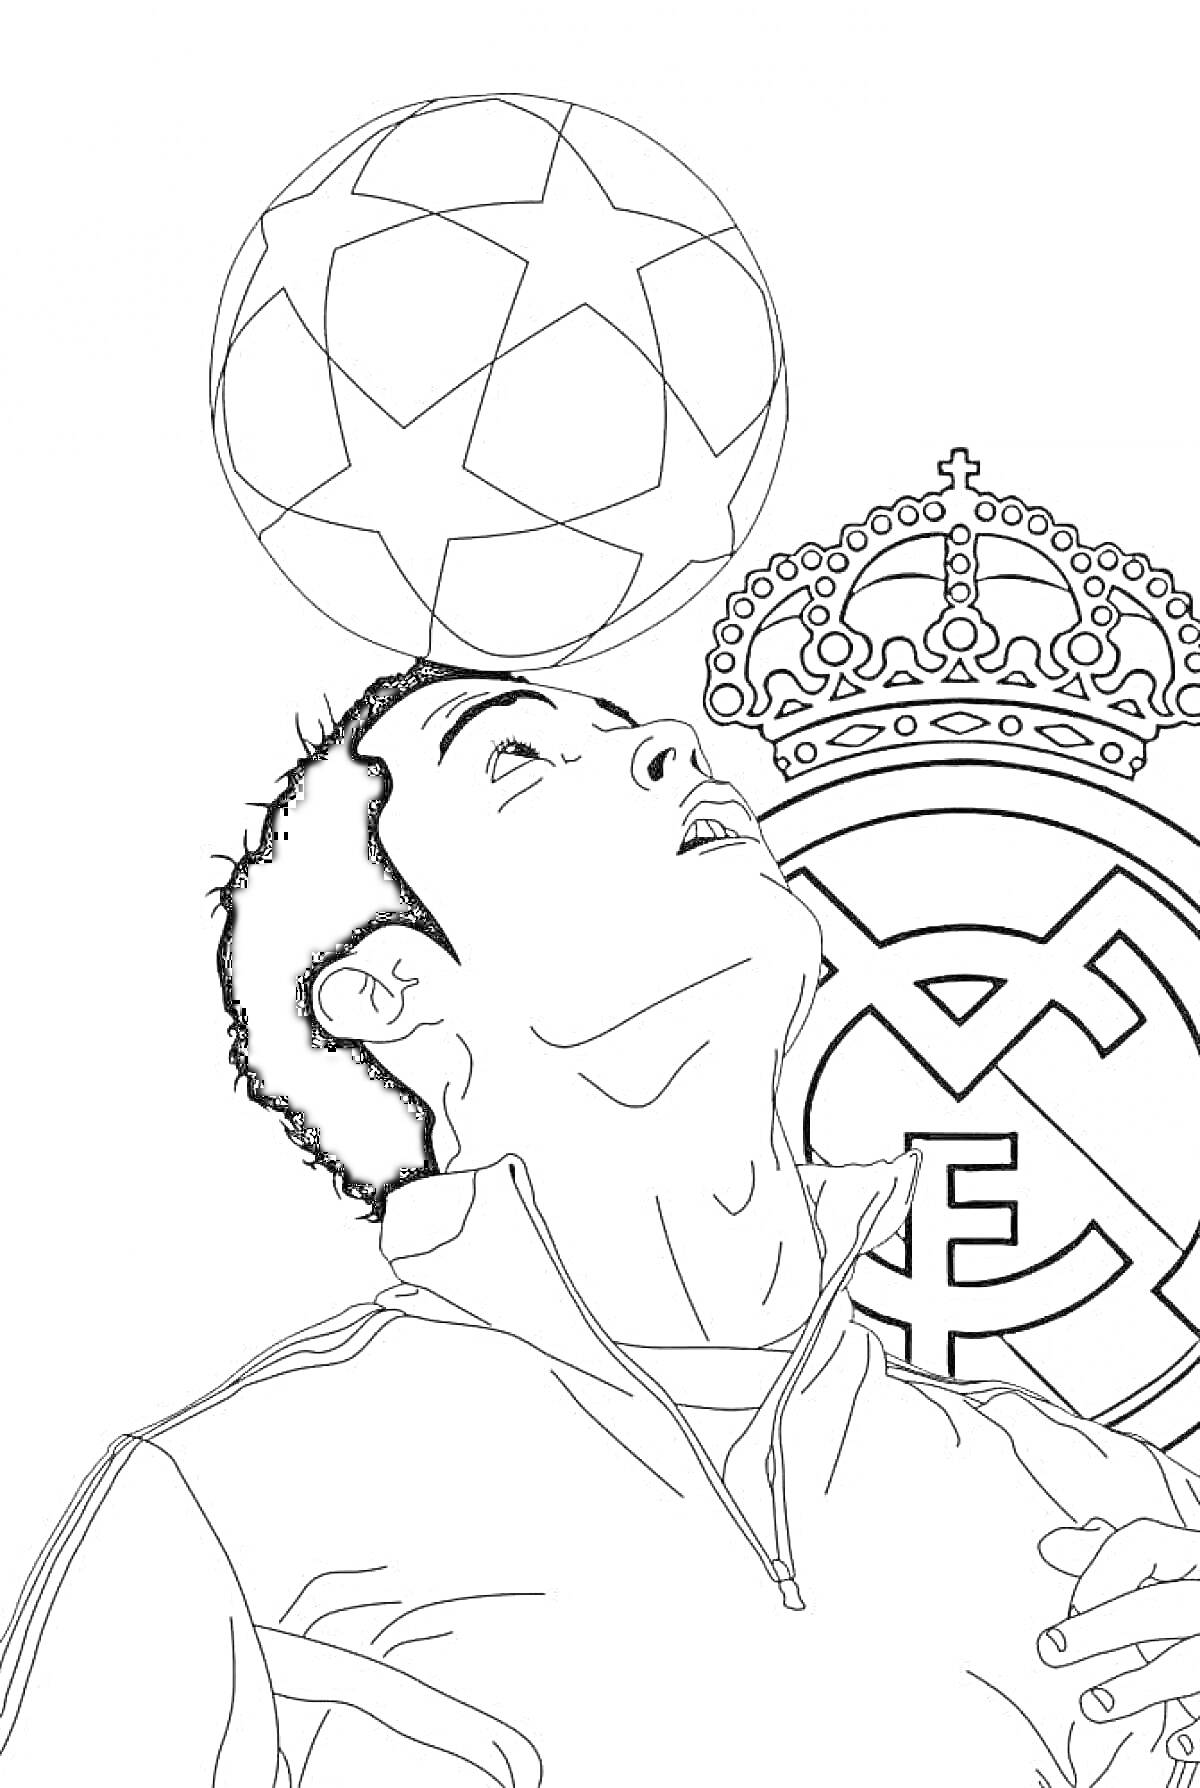 Футболист с мячом на голове и эмблема Реал Мадрид